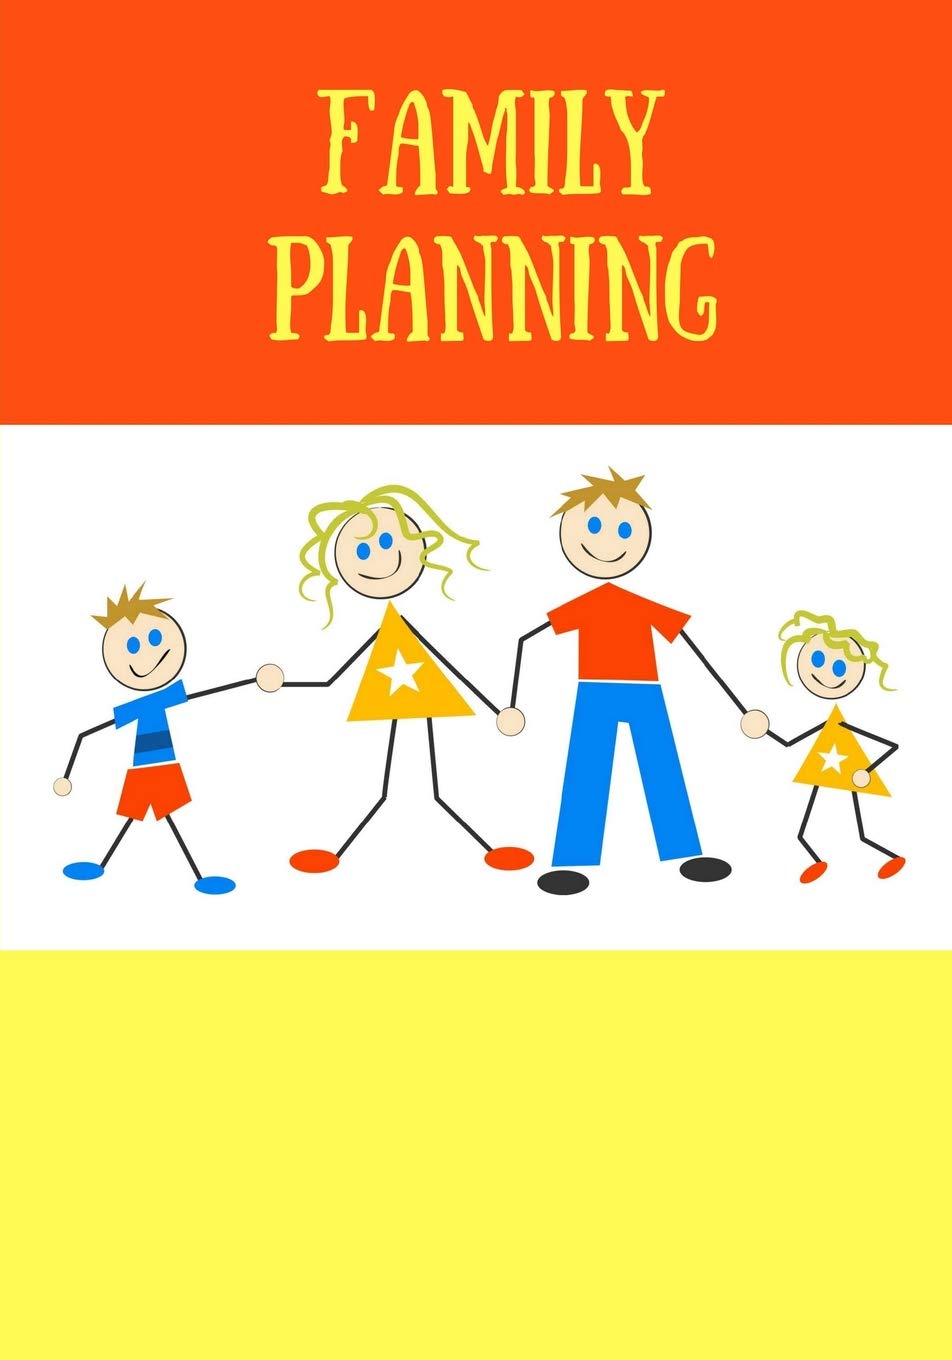 planner clipart family plan